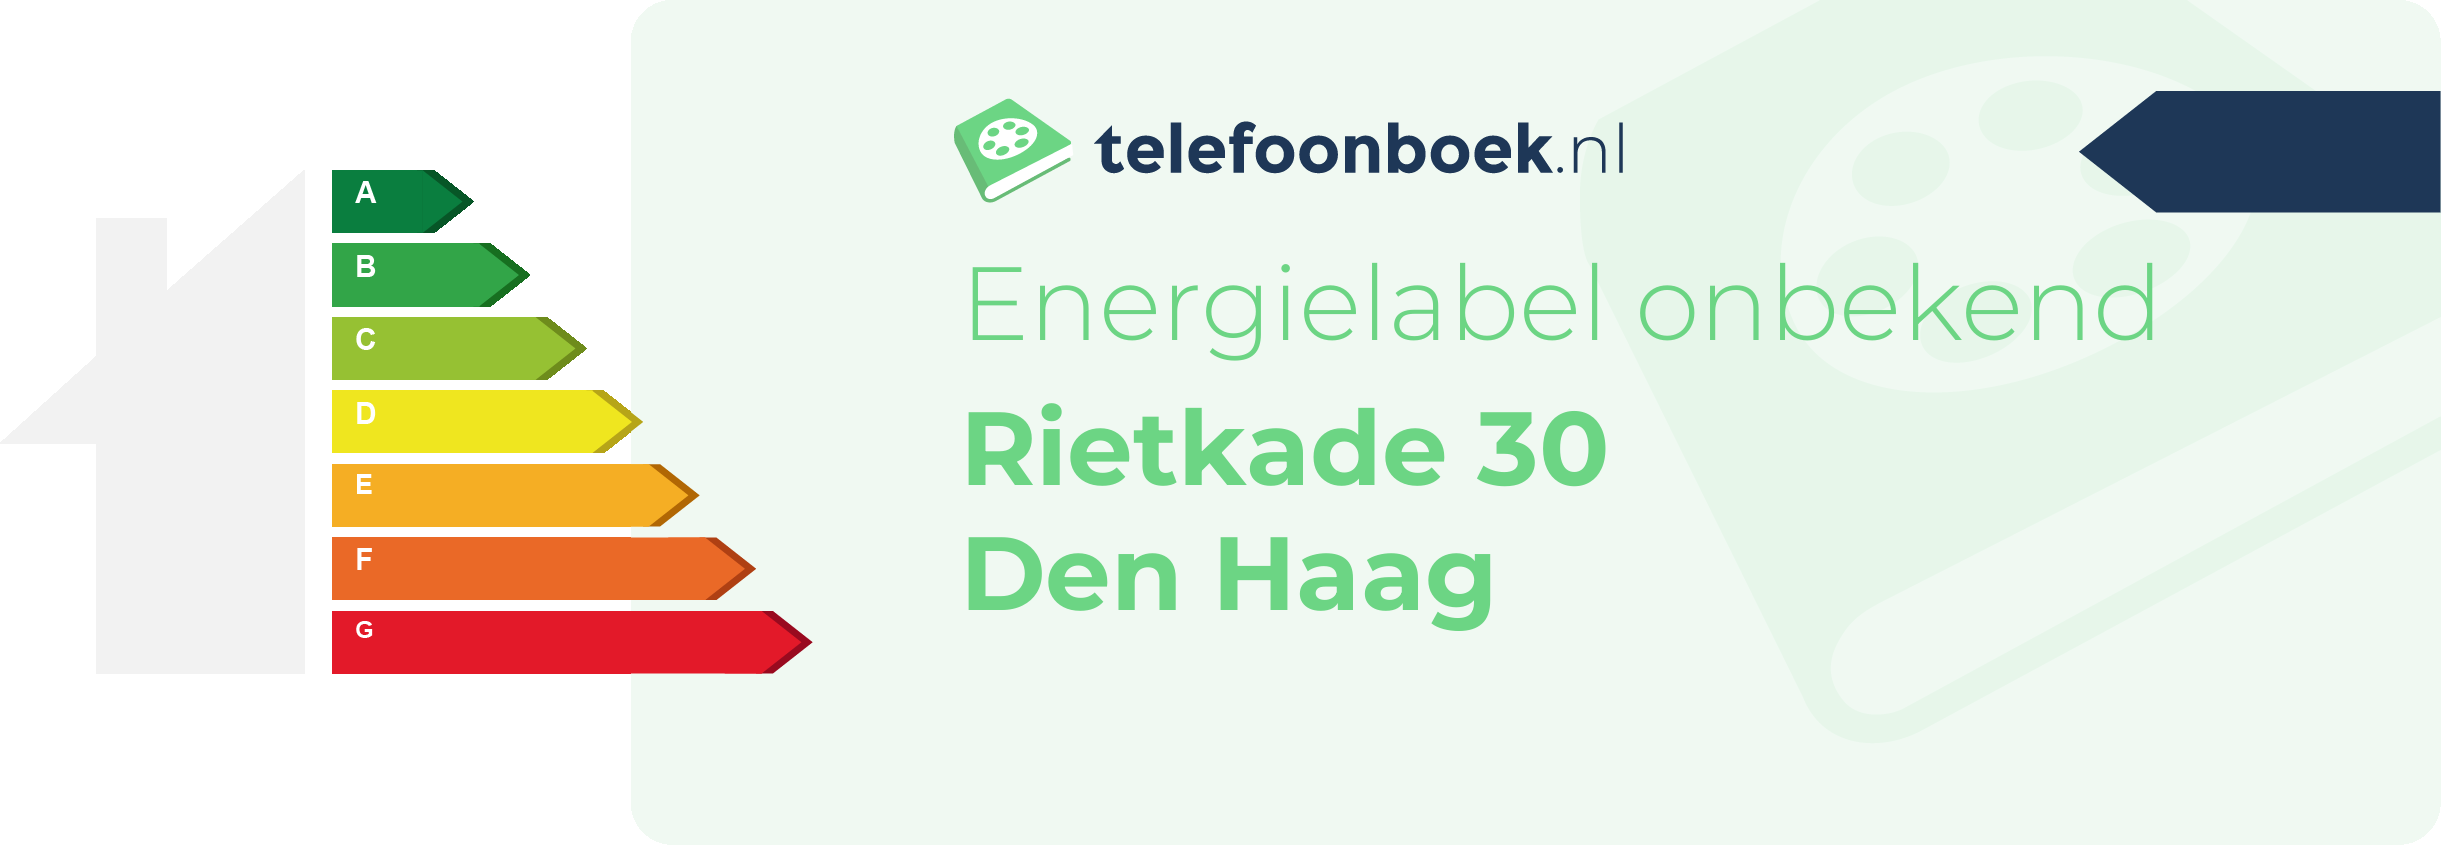 Energielabel Rietkade 30 Den Haag